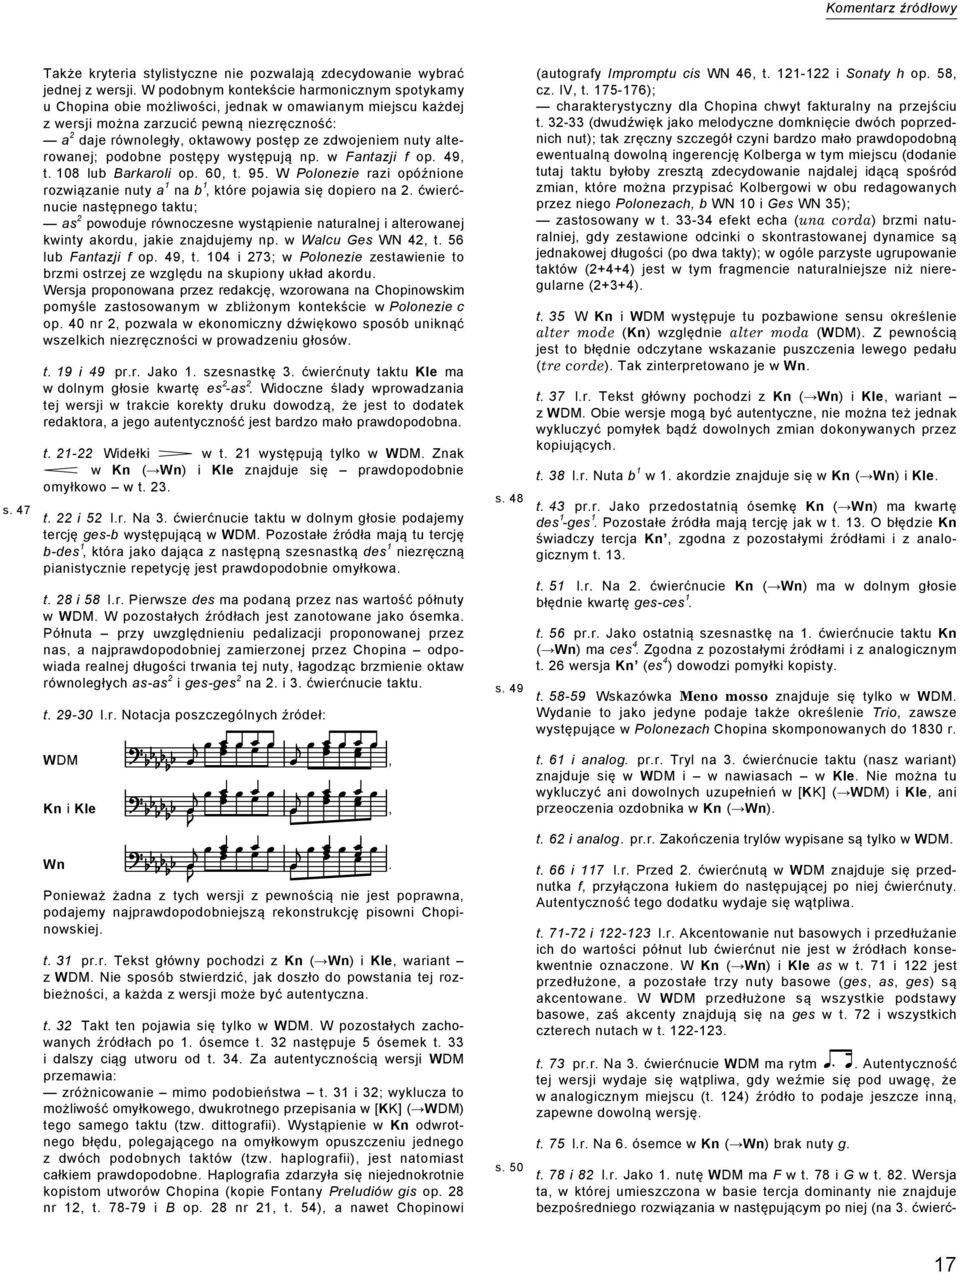 zdwojeniem nuty alterowanej; podobne postępy występują np. w Fantazji f op. 49, t. 10 lub Barkaroli op. 60, t. 9.